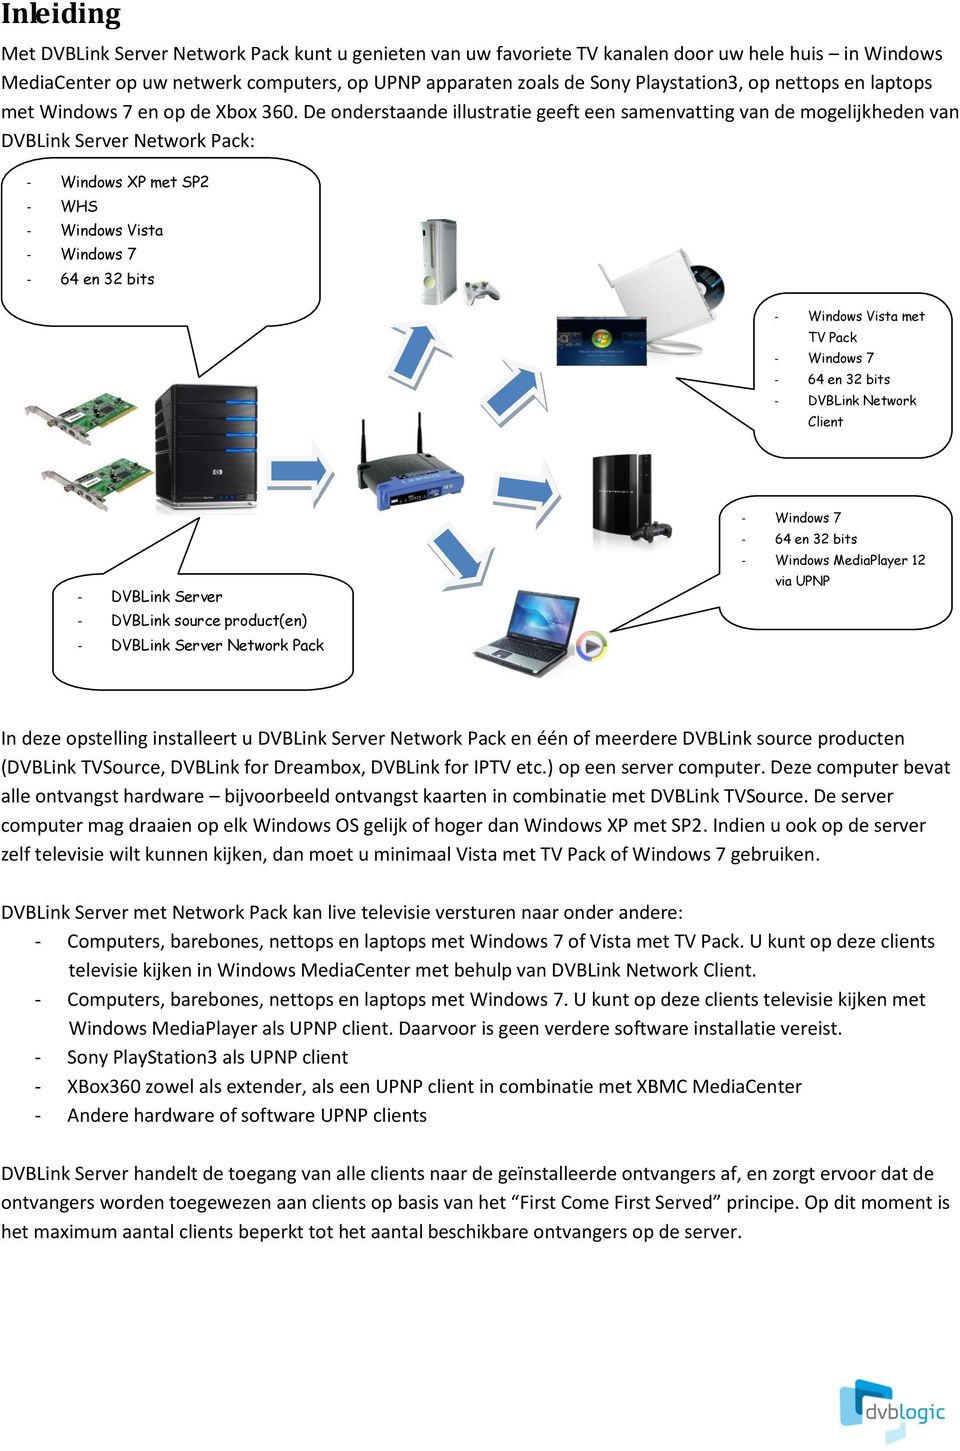 De onderstaande illustratie geeft een samenvatting van de mogelijkheden van DVBLink Server Network Pack: - Windows XP met SP2 - WHS - Windows Vista - Windows 7-64 en 32 bits - Windows Vista met TV